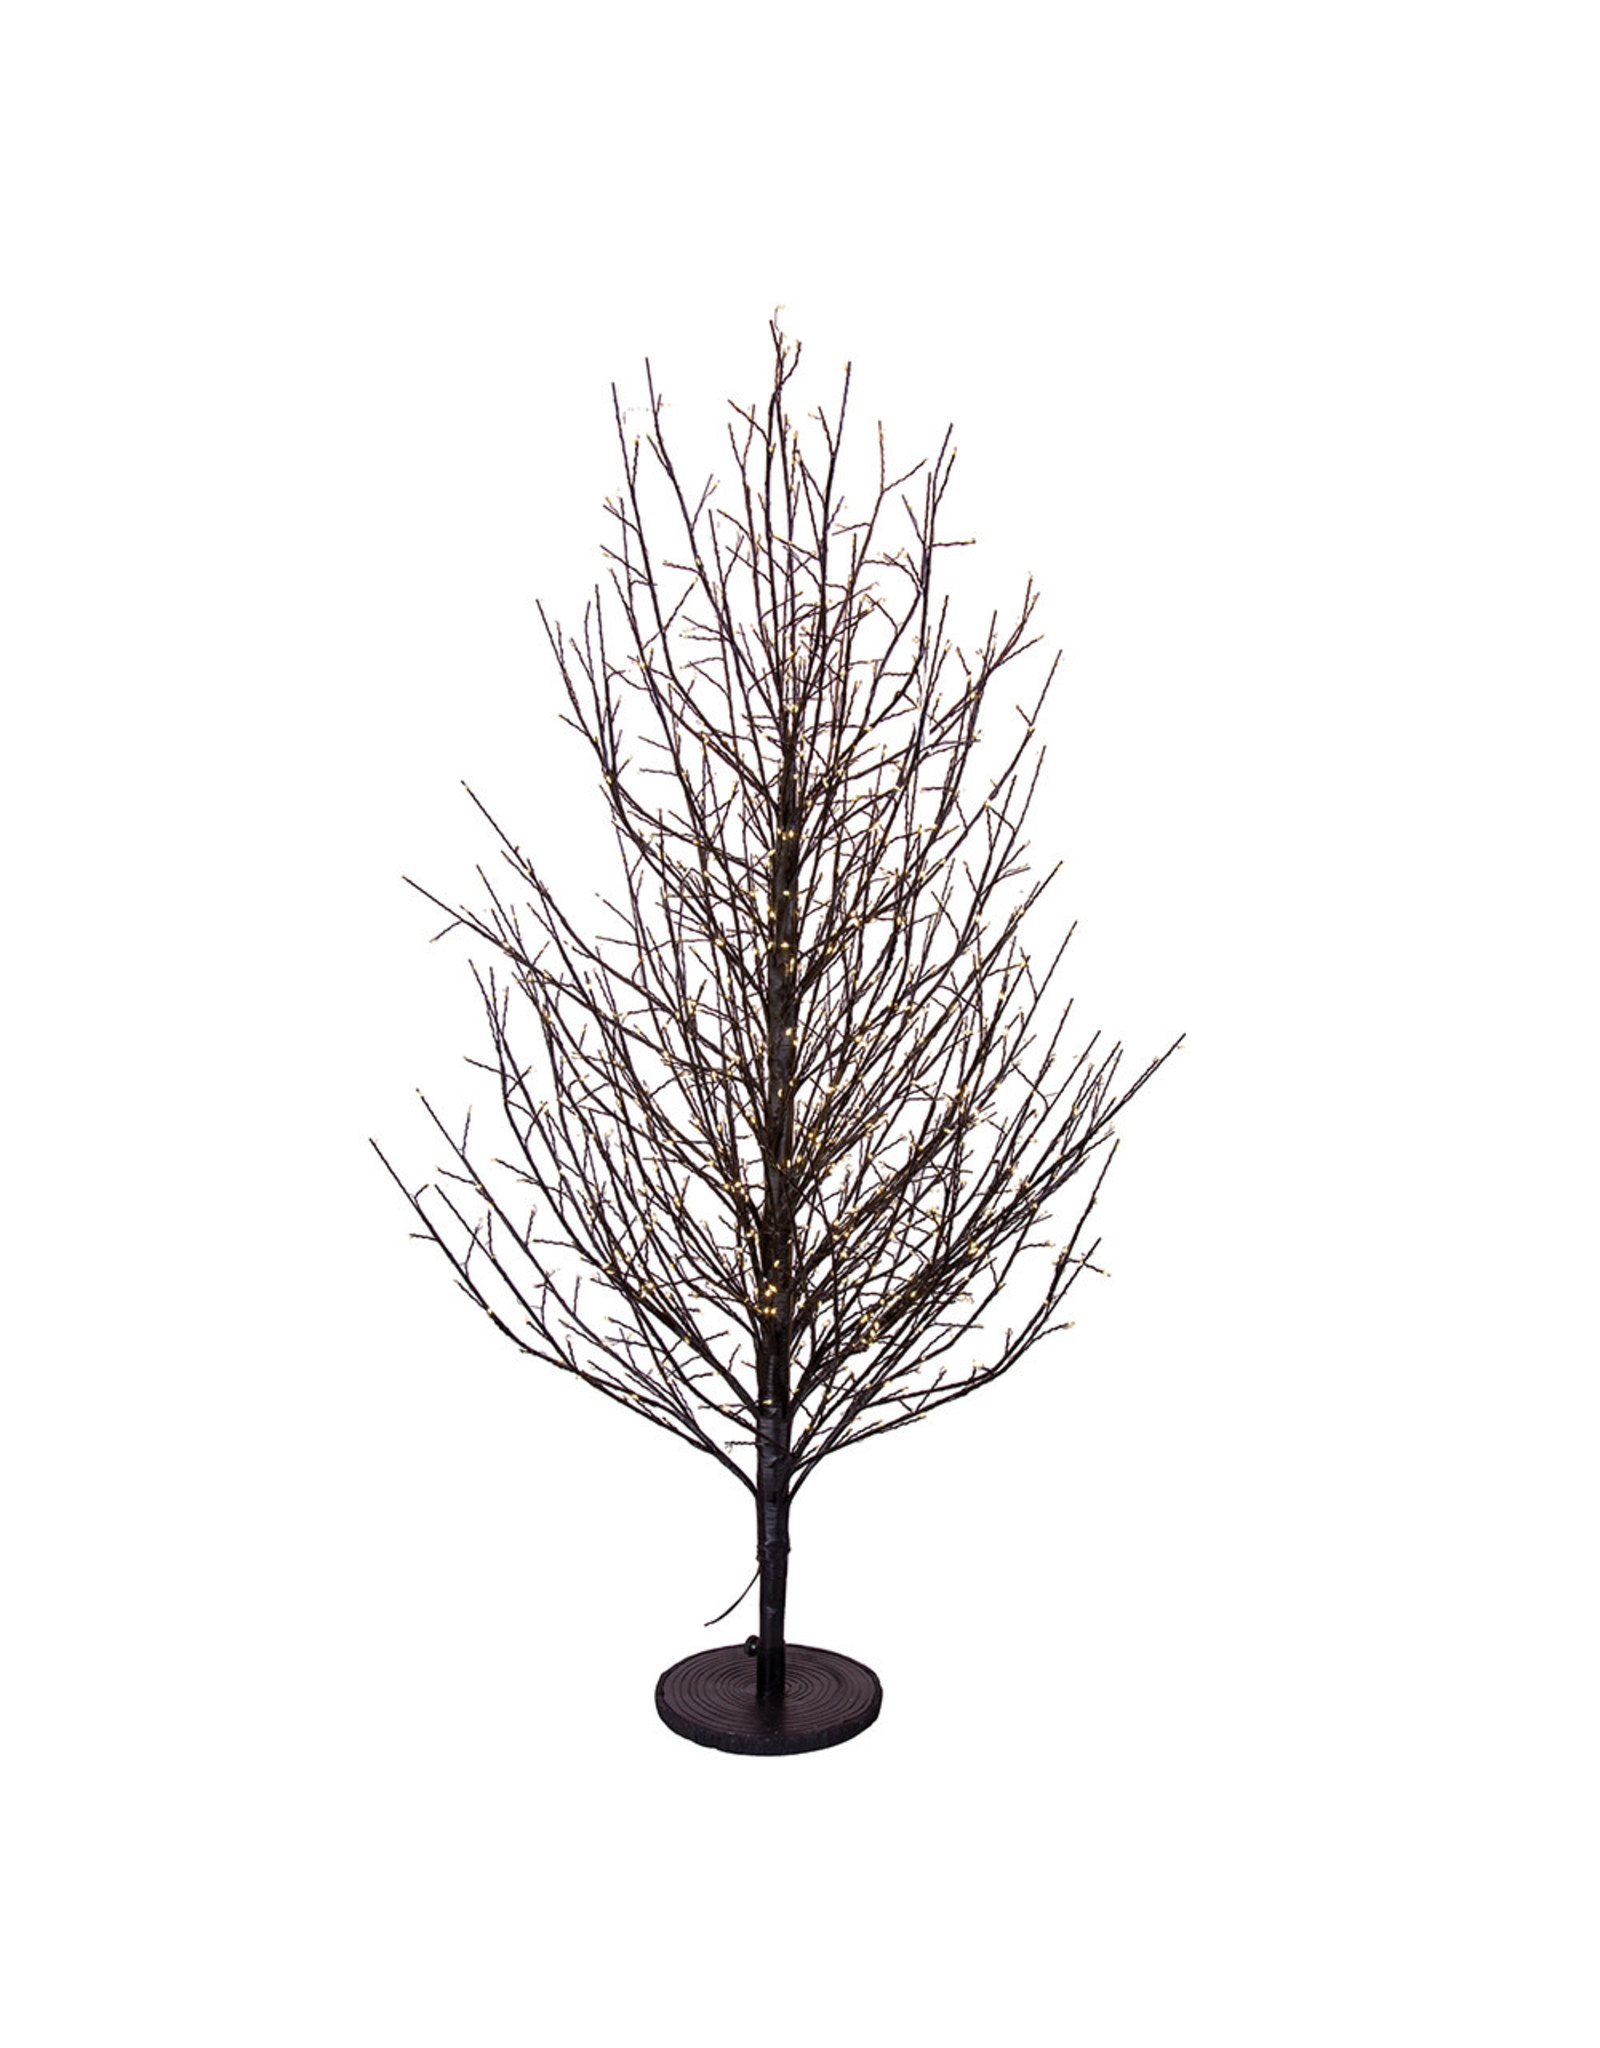 Kurt Adler Pre-Lit Dark Brown Branch Twig Tree 4 FT Warm White Lights